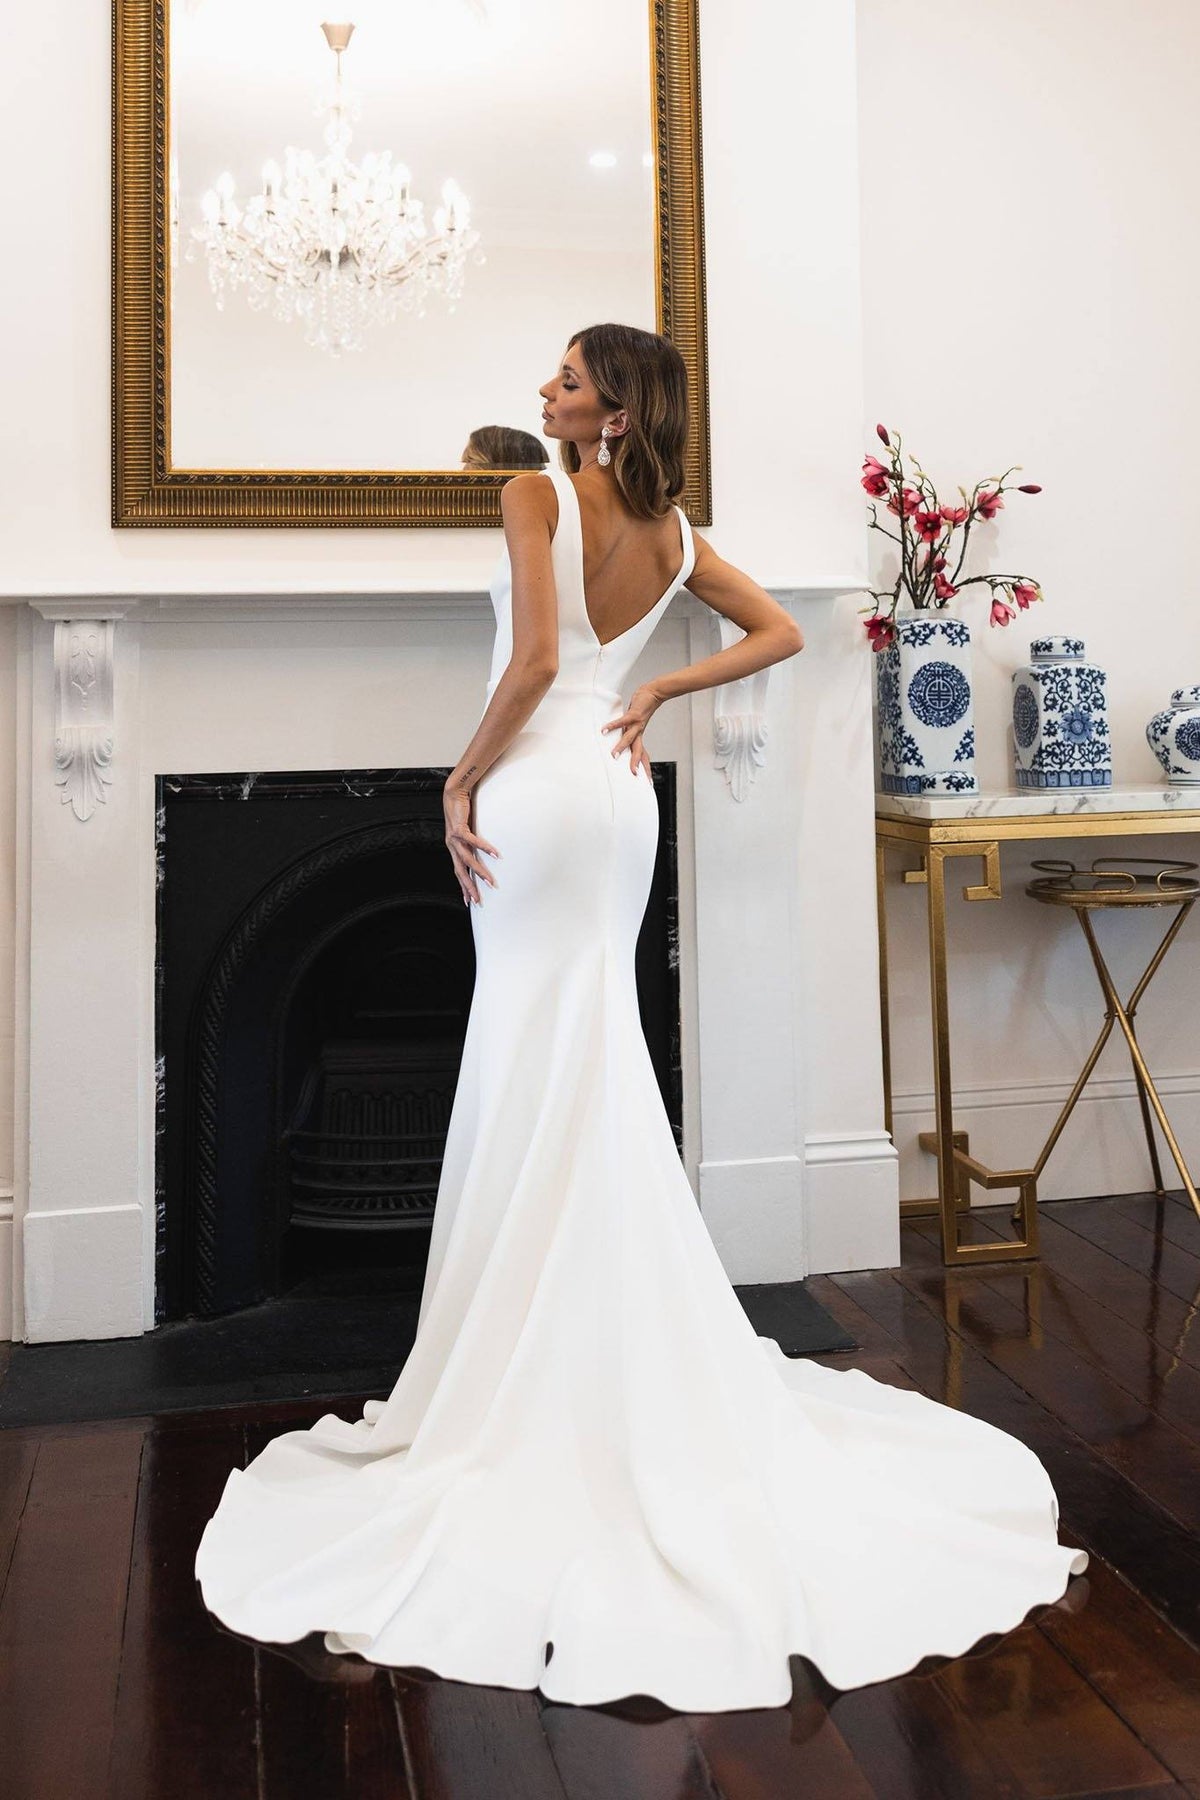 Back Image of Ivory White V-Neck Crepe Wedding Dress in Mermaid Silhouette, Deep V Neckline, Open V-Shape Back, Medium Long Train